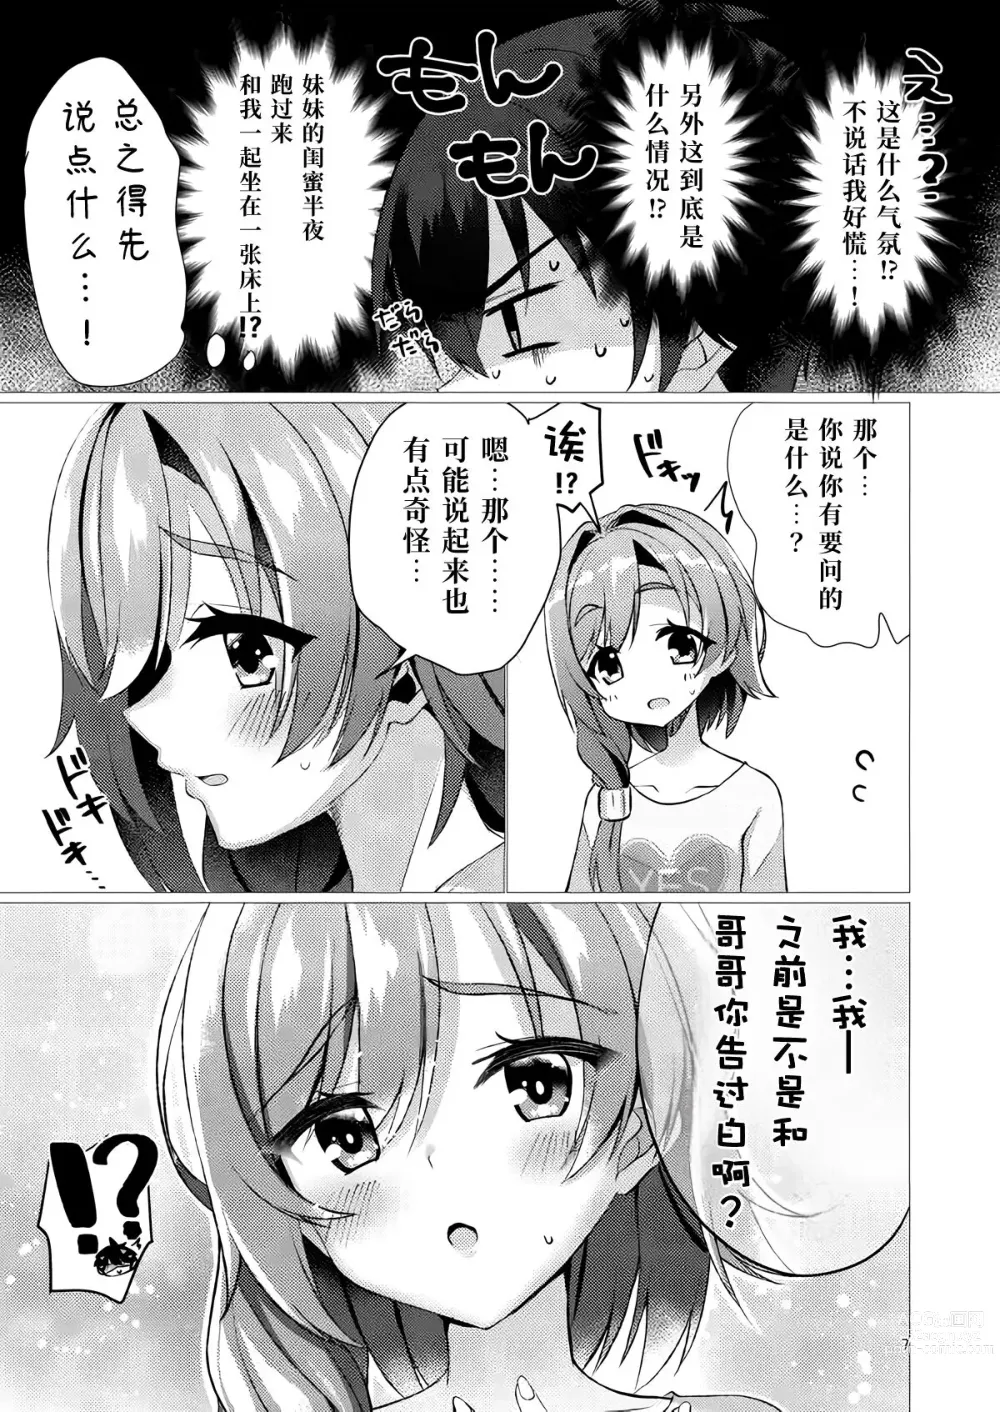 Page 6 of doujinshi 若已与你在梦中相遇过。